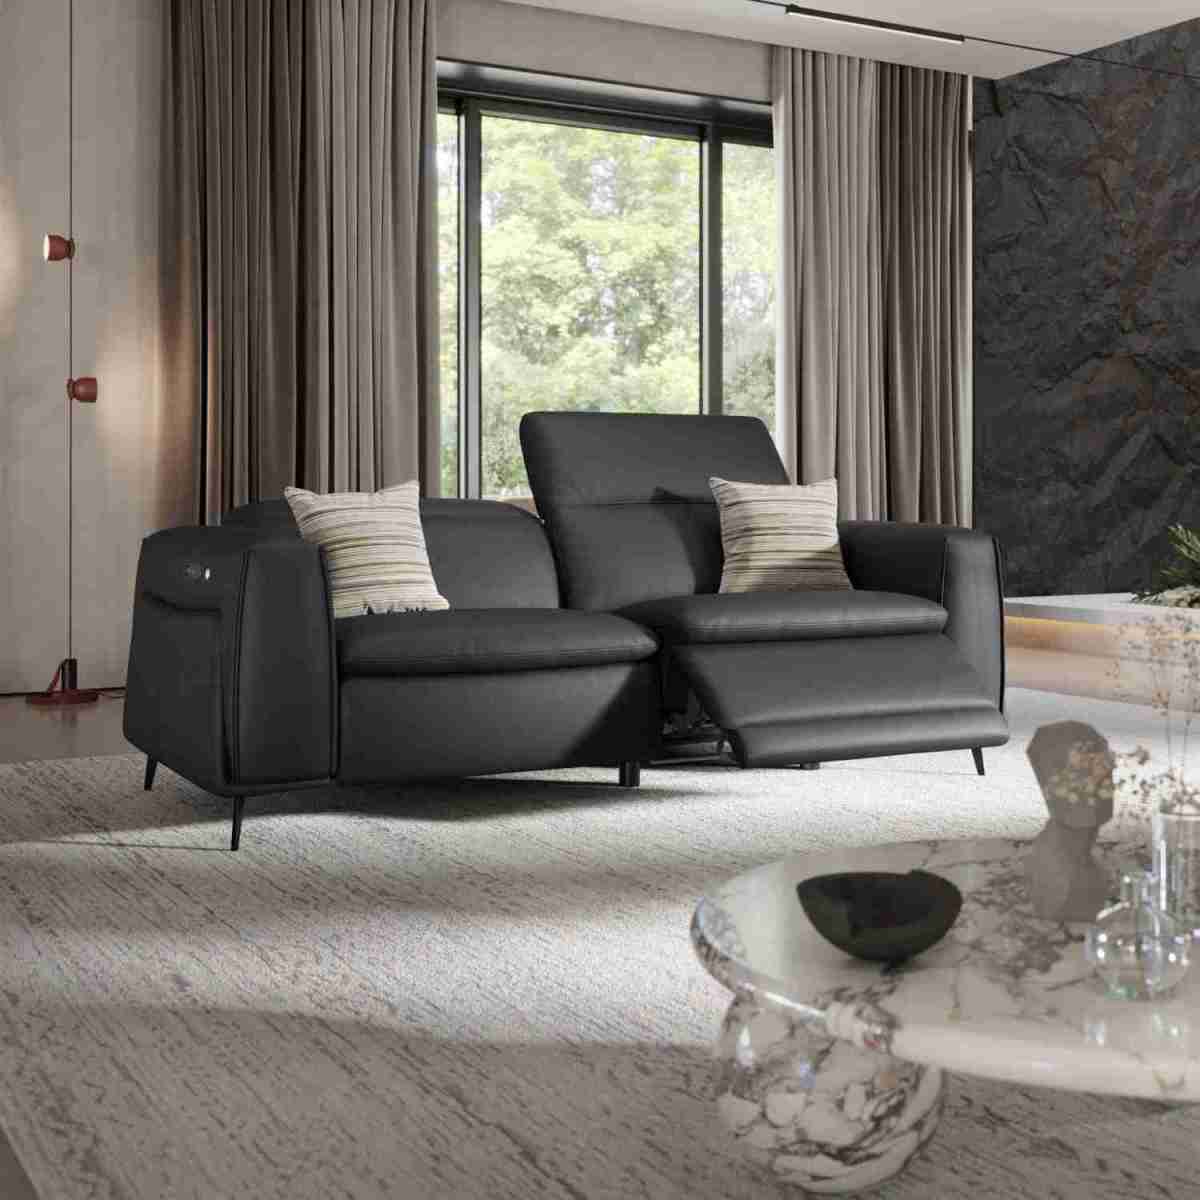 Produktvorstellung Auf allen Ebenen charmant: Couch Belluno kommt mit wärmender Sitzheizung - News, Bild 3